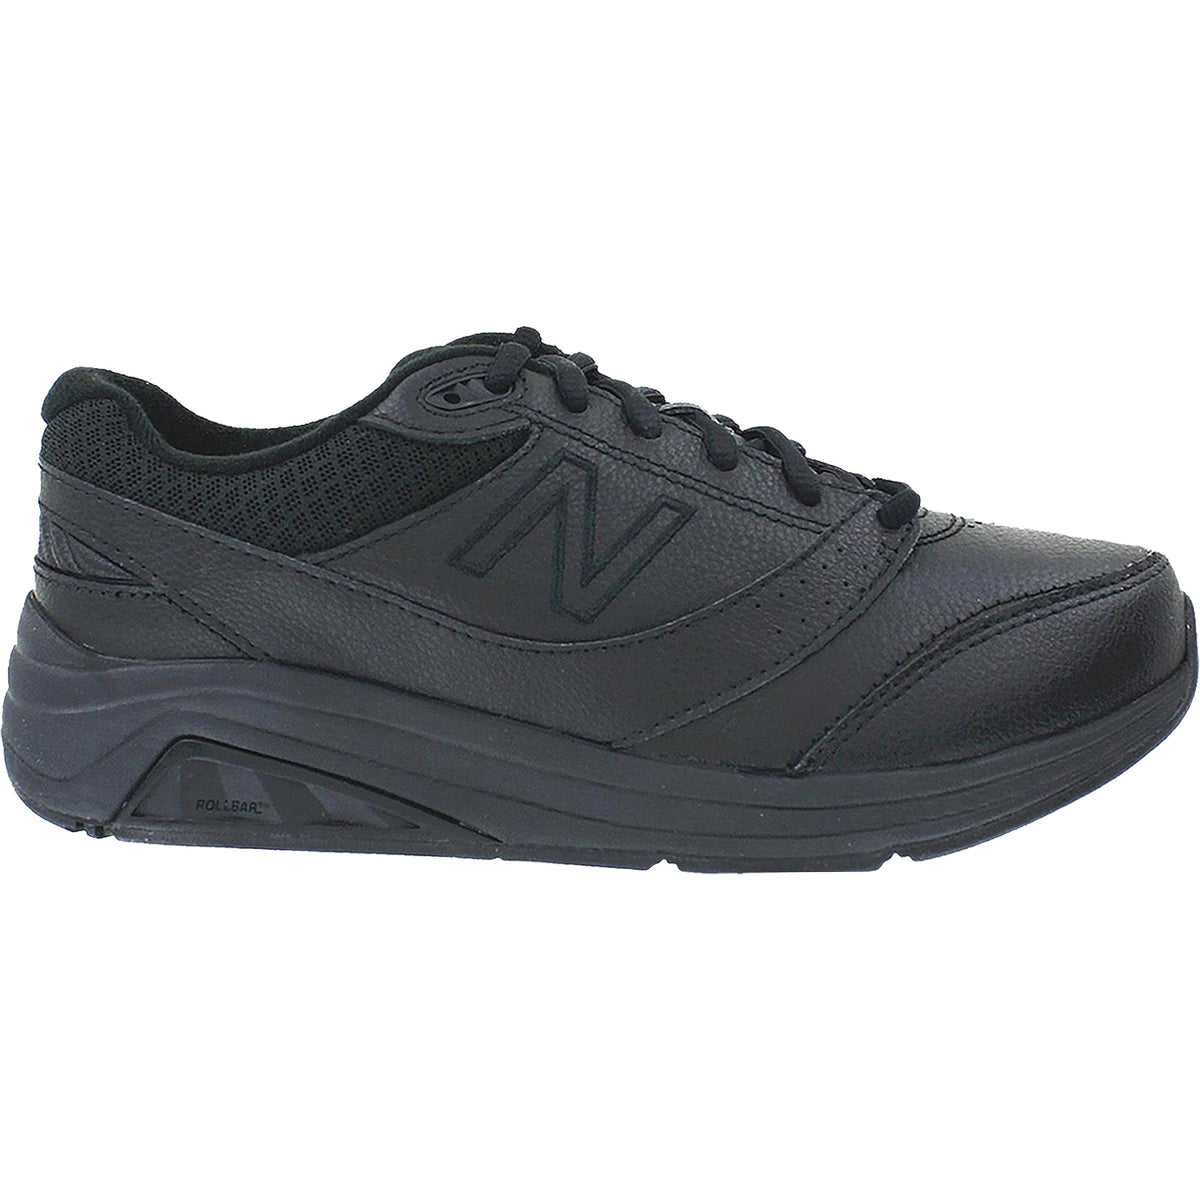 Women's New Balance WW928BK3 Walking Shoes Black Leather – Footwear etc.